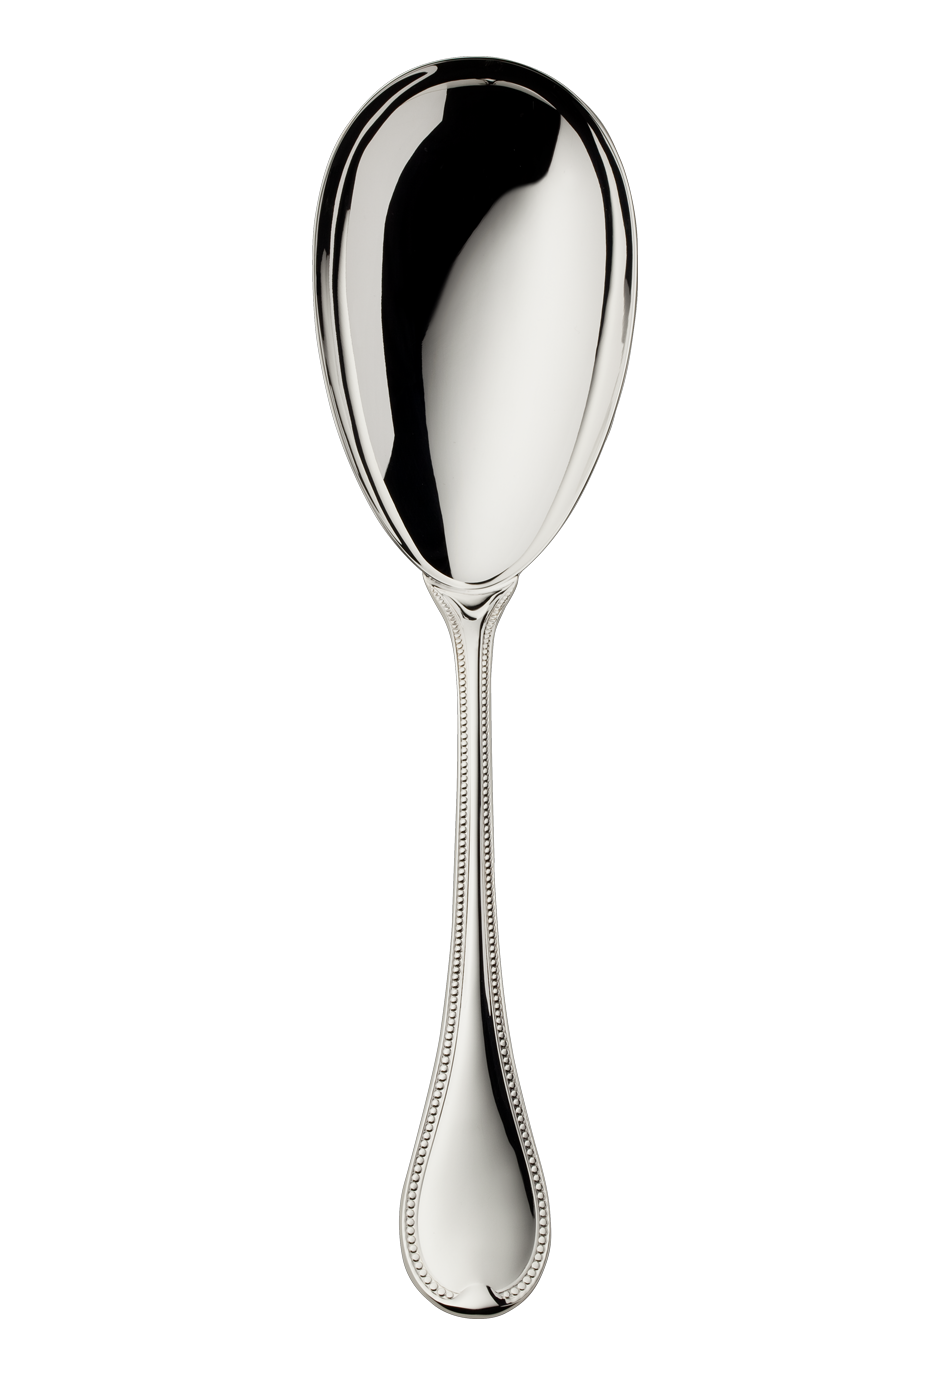 Französisch-Perl Serving Spoon (925 Sterling Silver)